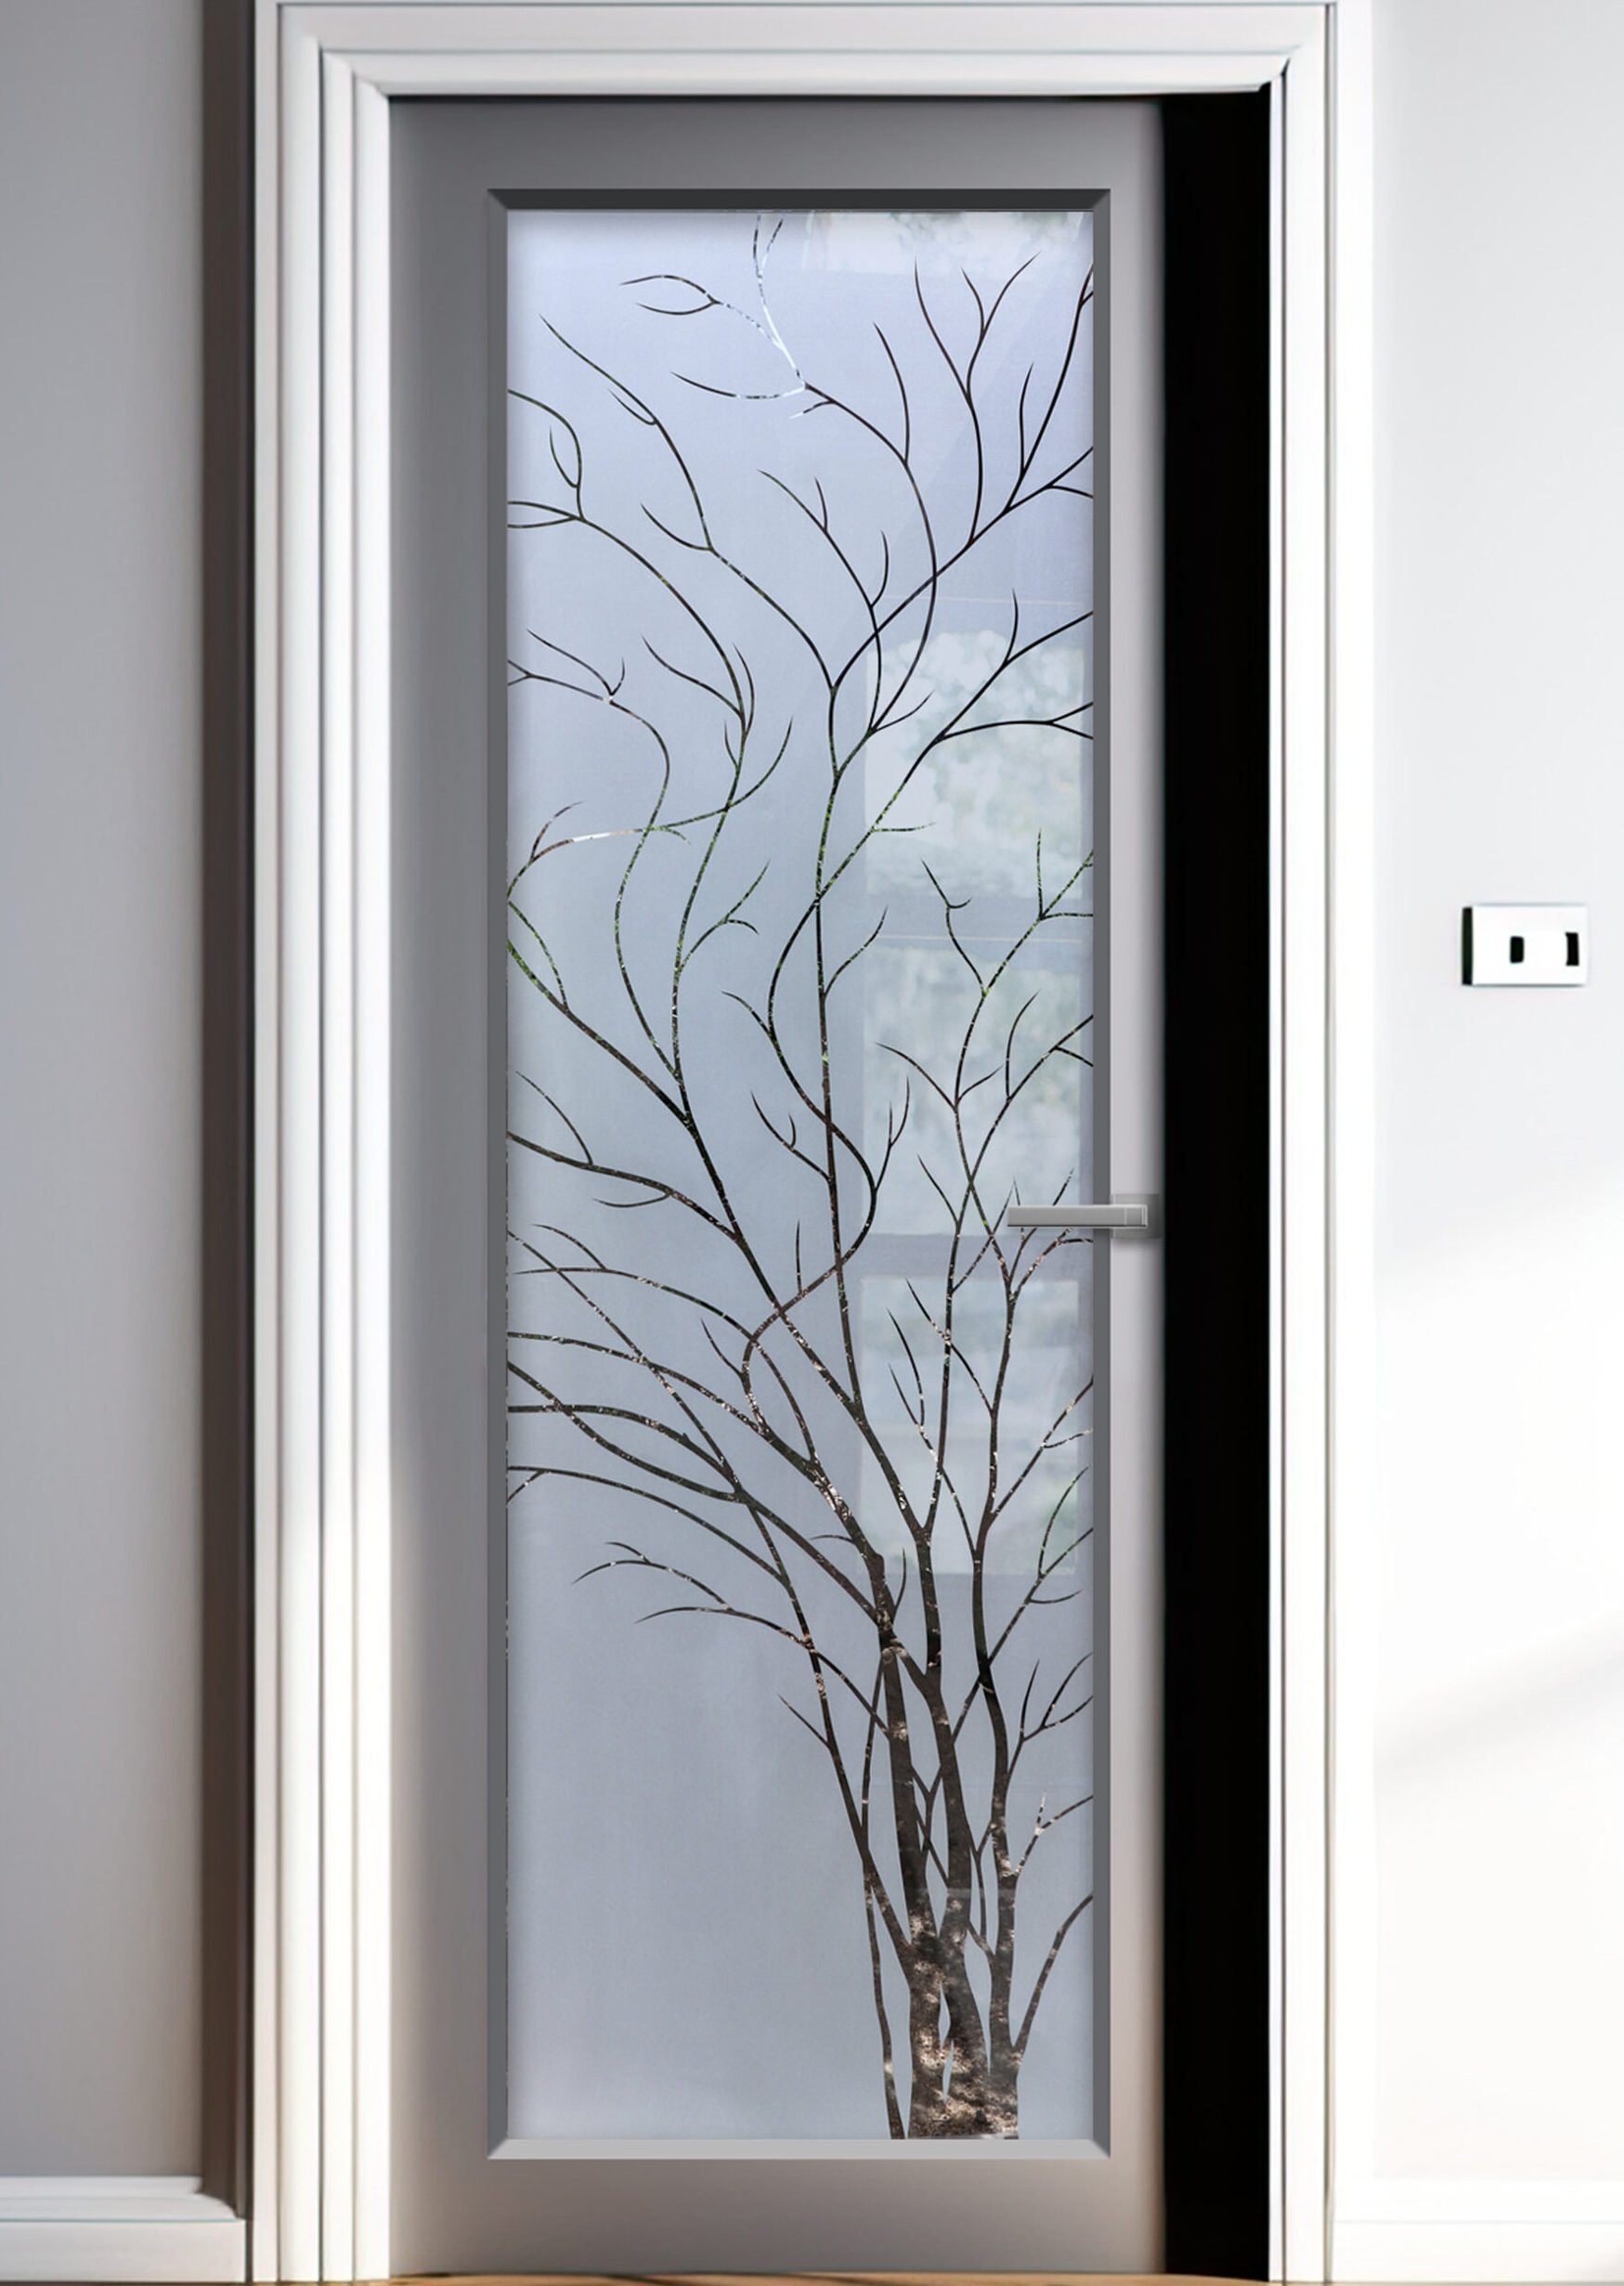 Wispy Tree Semi-Private 1D Negative Frosted Glass Door Insert Entry Door Interior Door Modern decor Sans Soucie